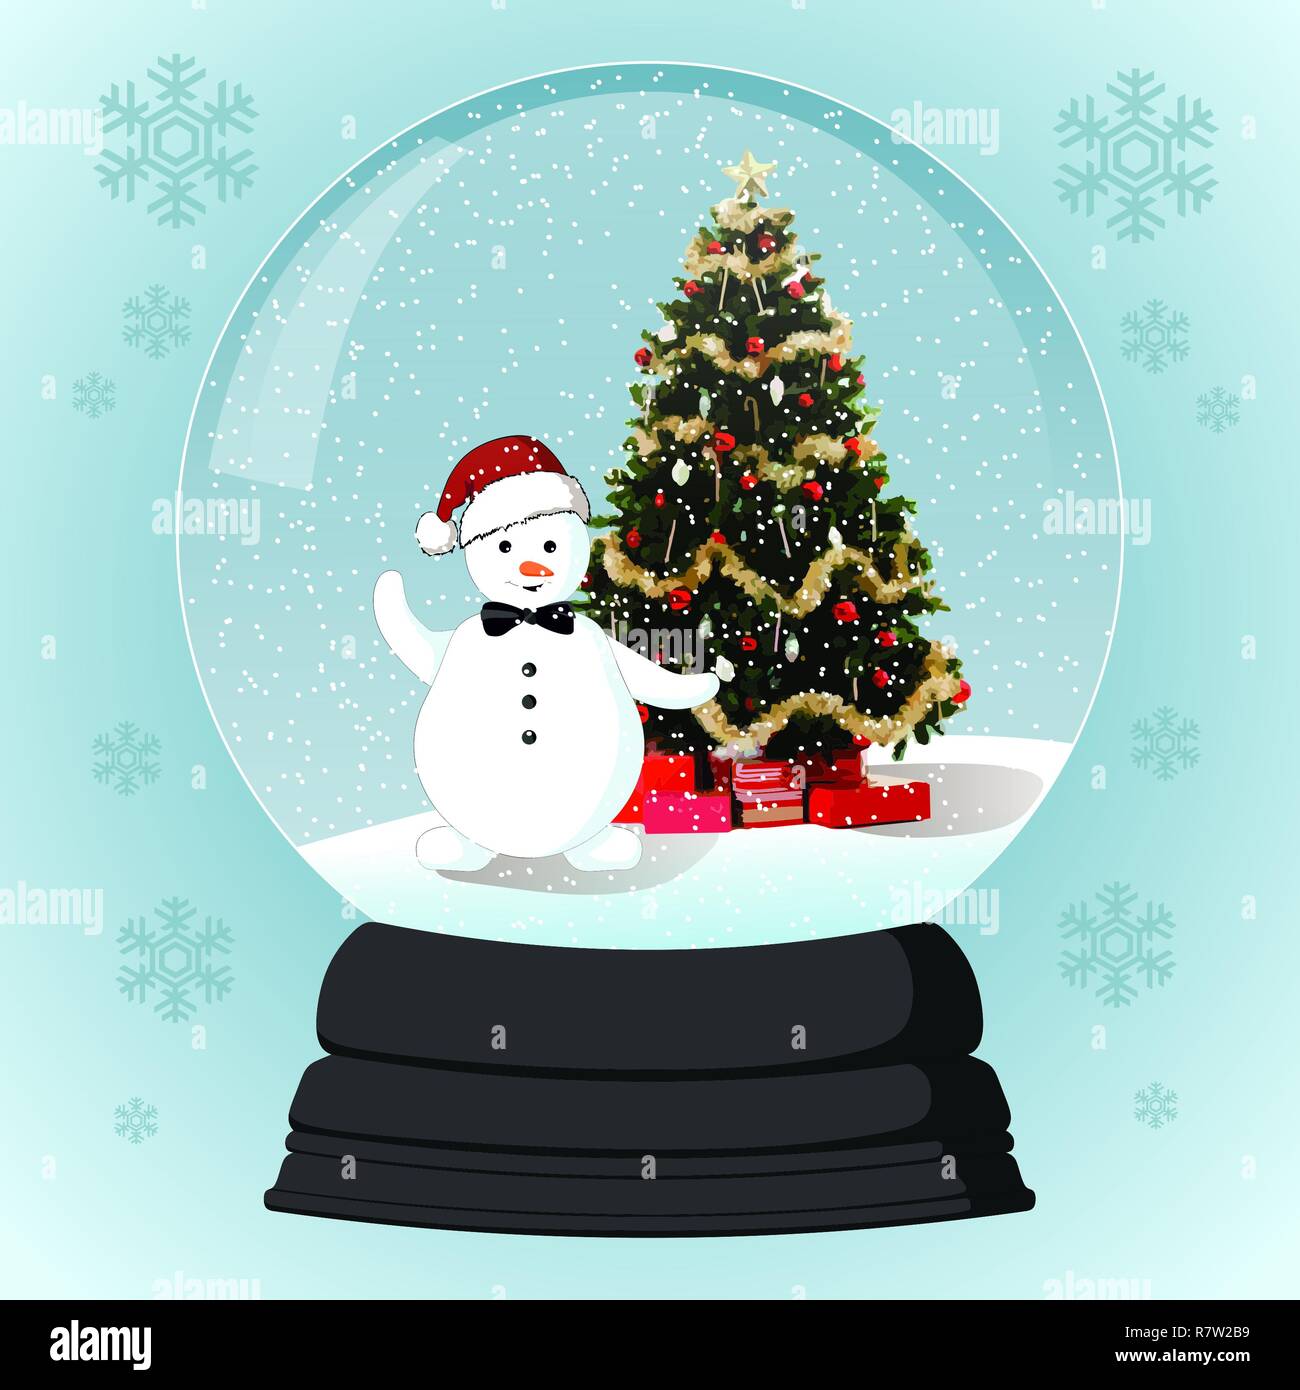 Weihnachten Glas - Kugel mit Schneemann und Weihnachtsbaum Stockfoto